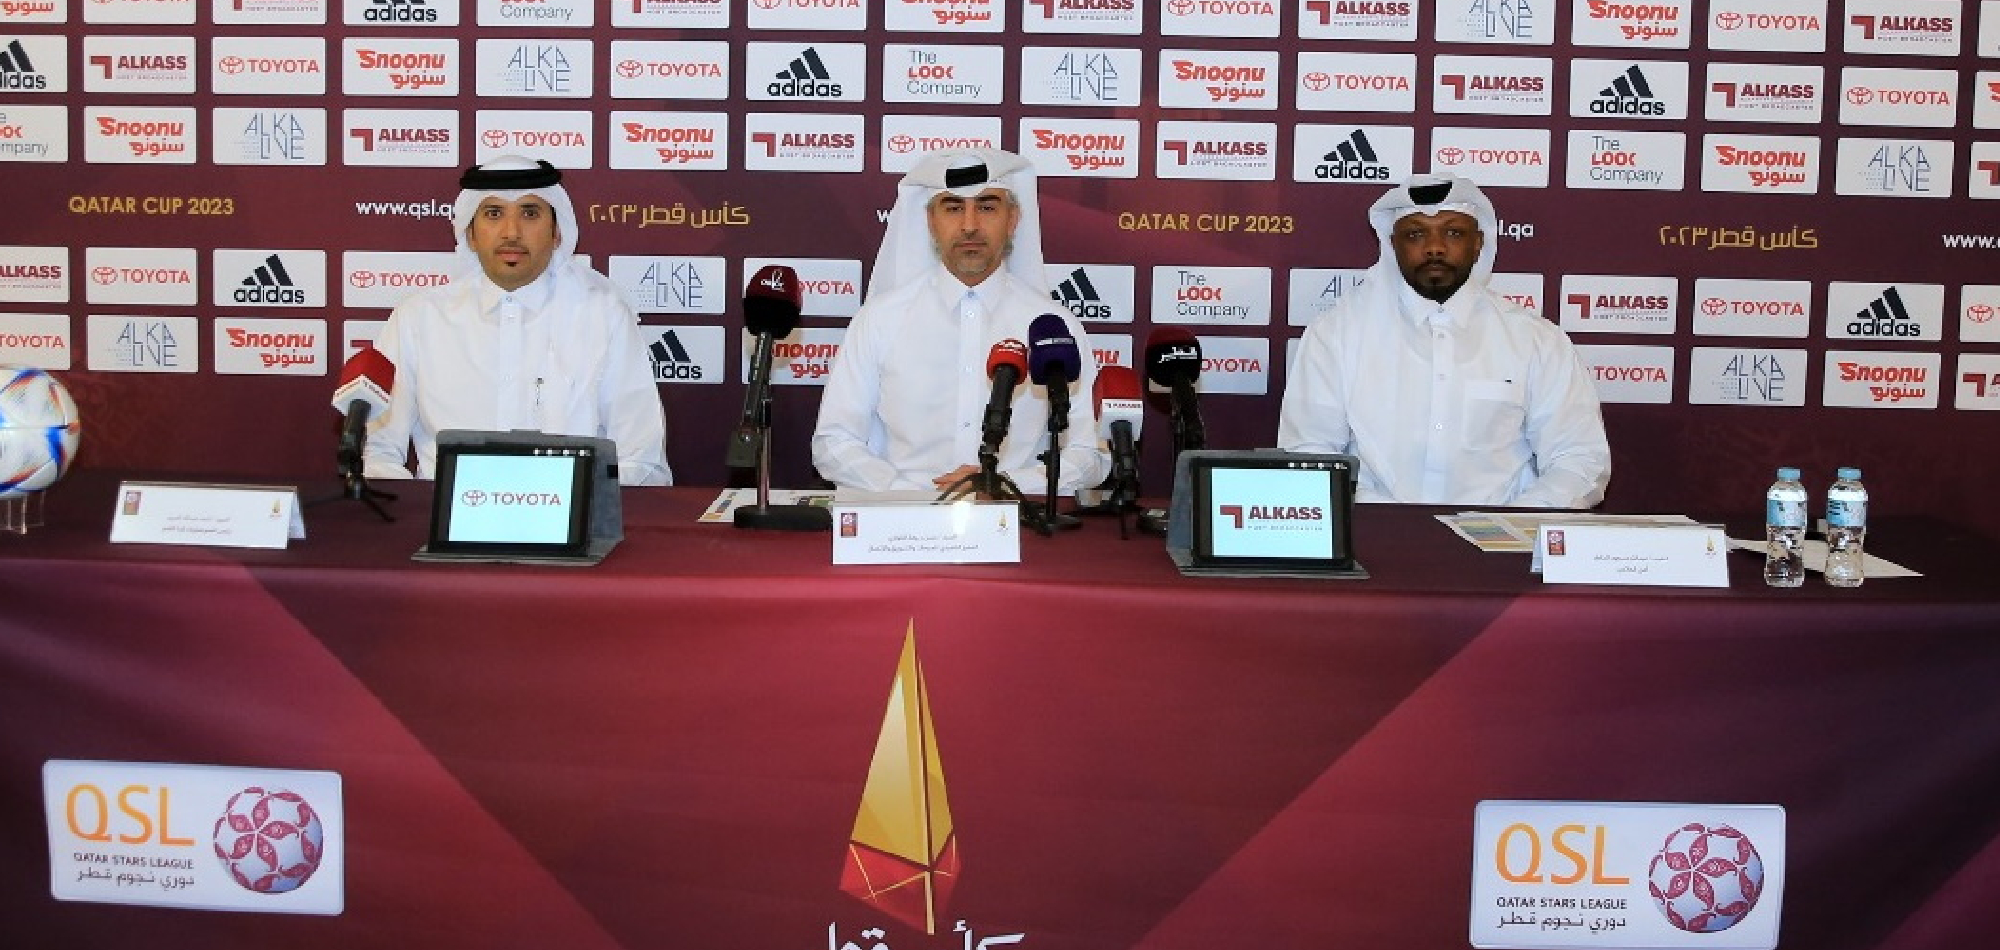 Qatar Stars League announces arrangements for Qatar Cup 2023 final